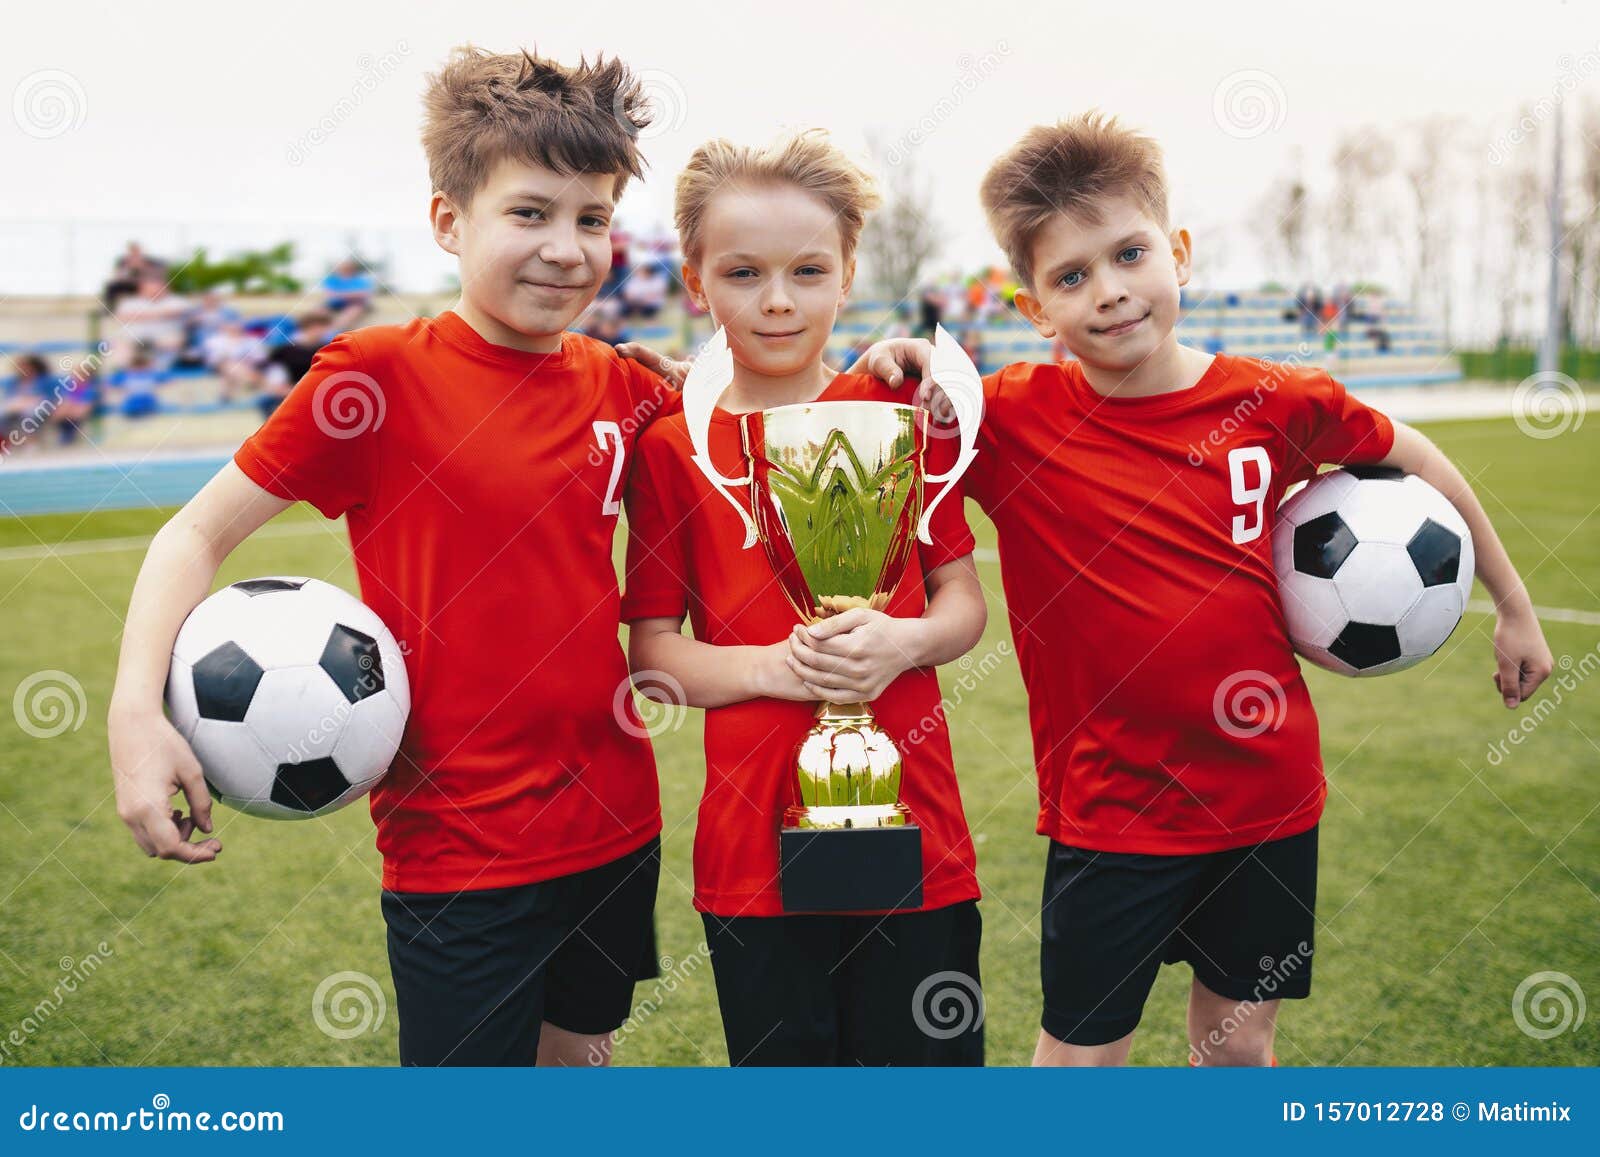 Drei glückliche, fröhliche Kinder des Sportfußballteams Boys Football Players Holding Trophy im Stadion Junge Gewinner des Jugendfußballturniers